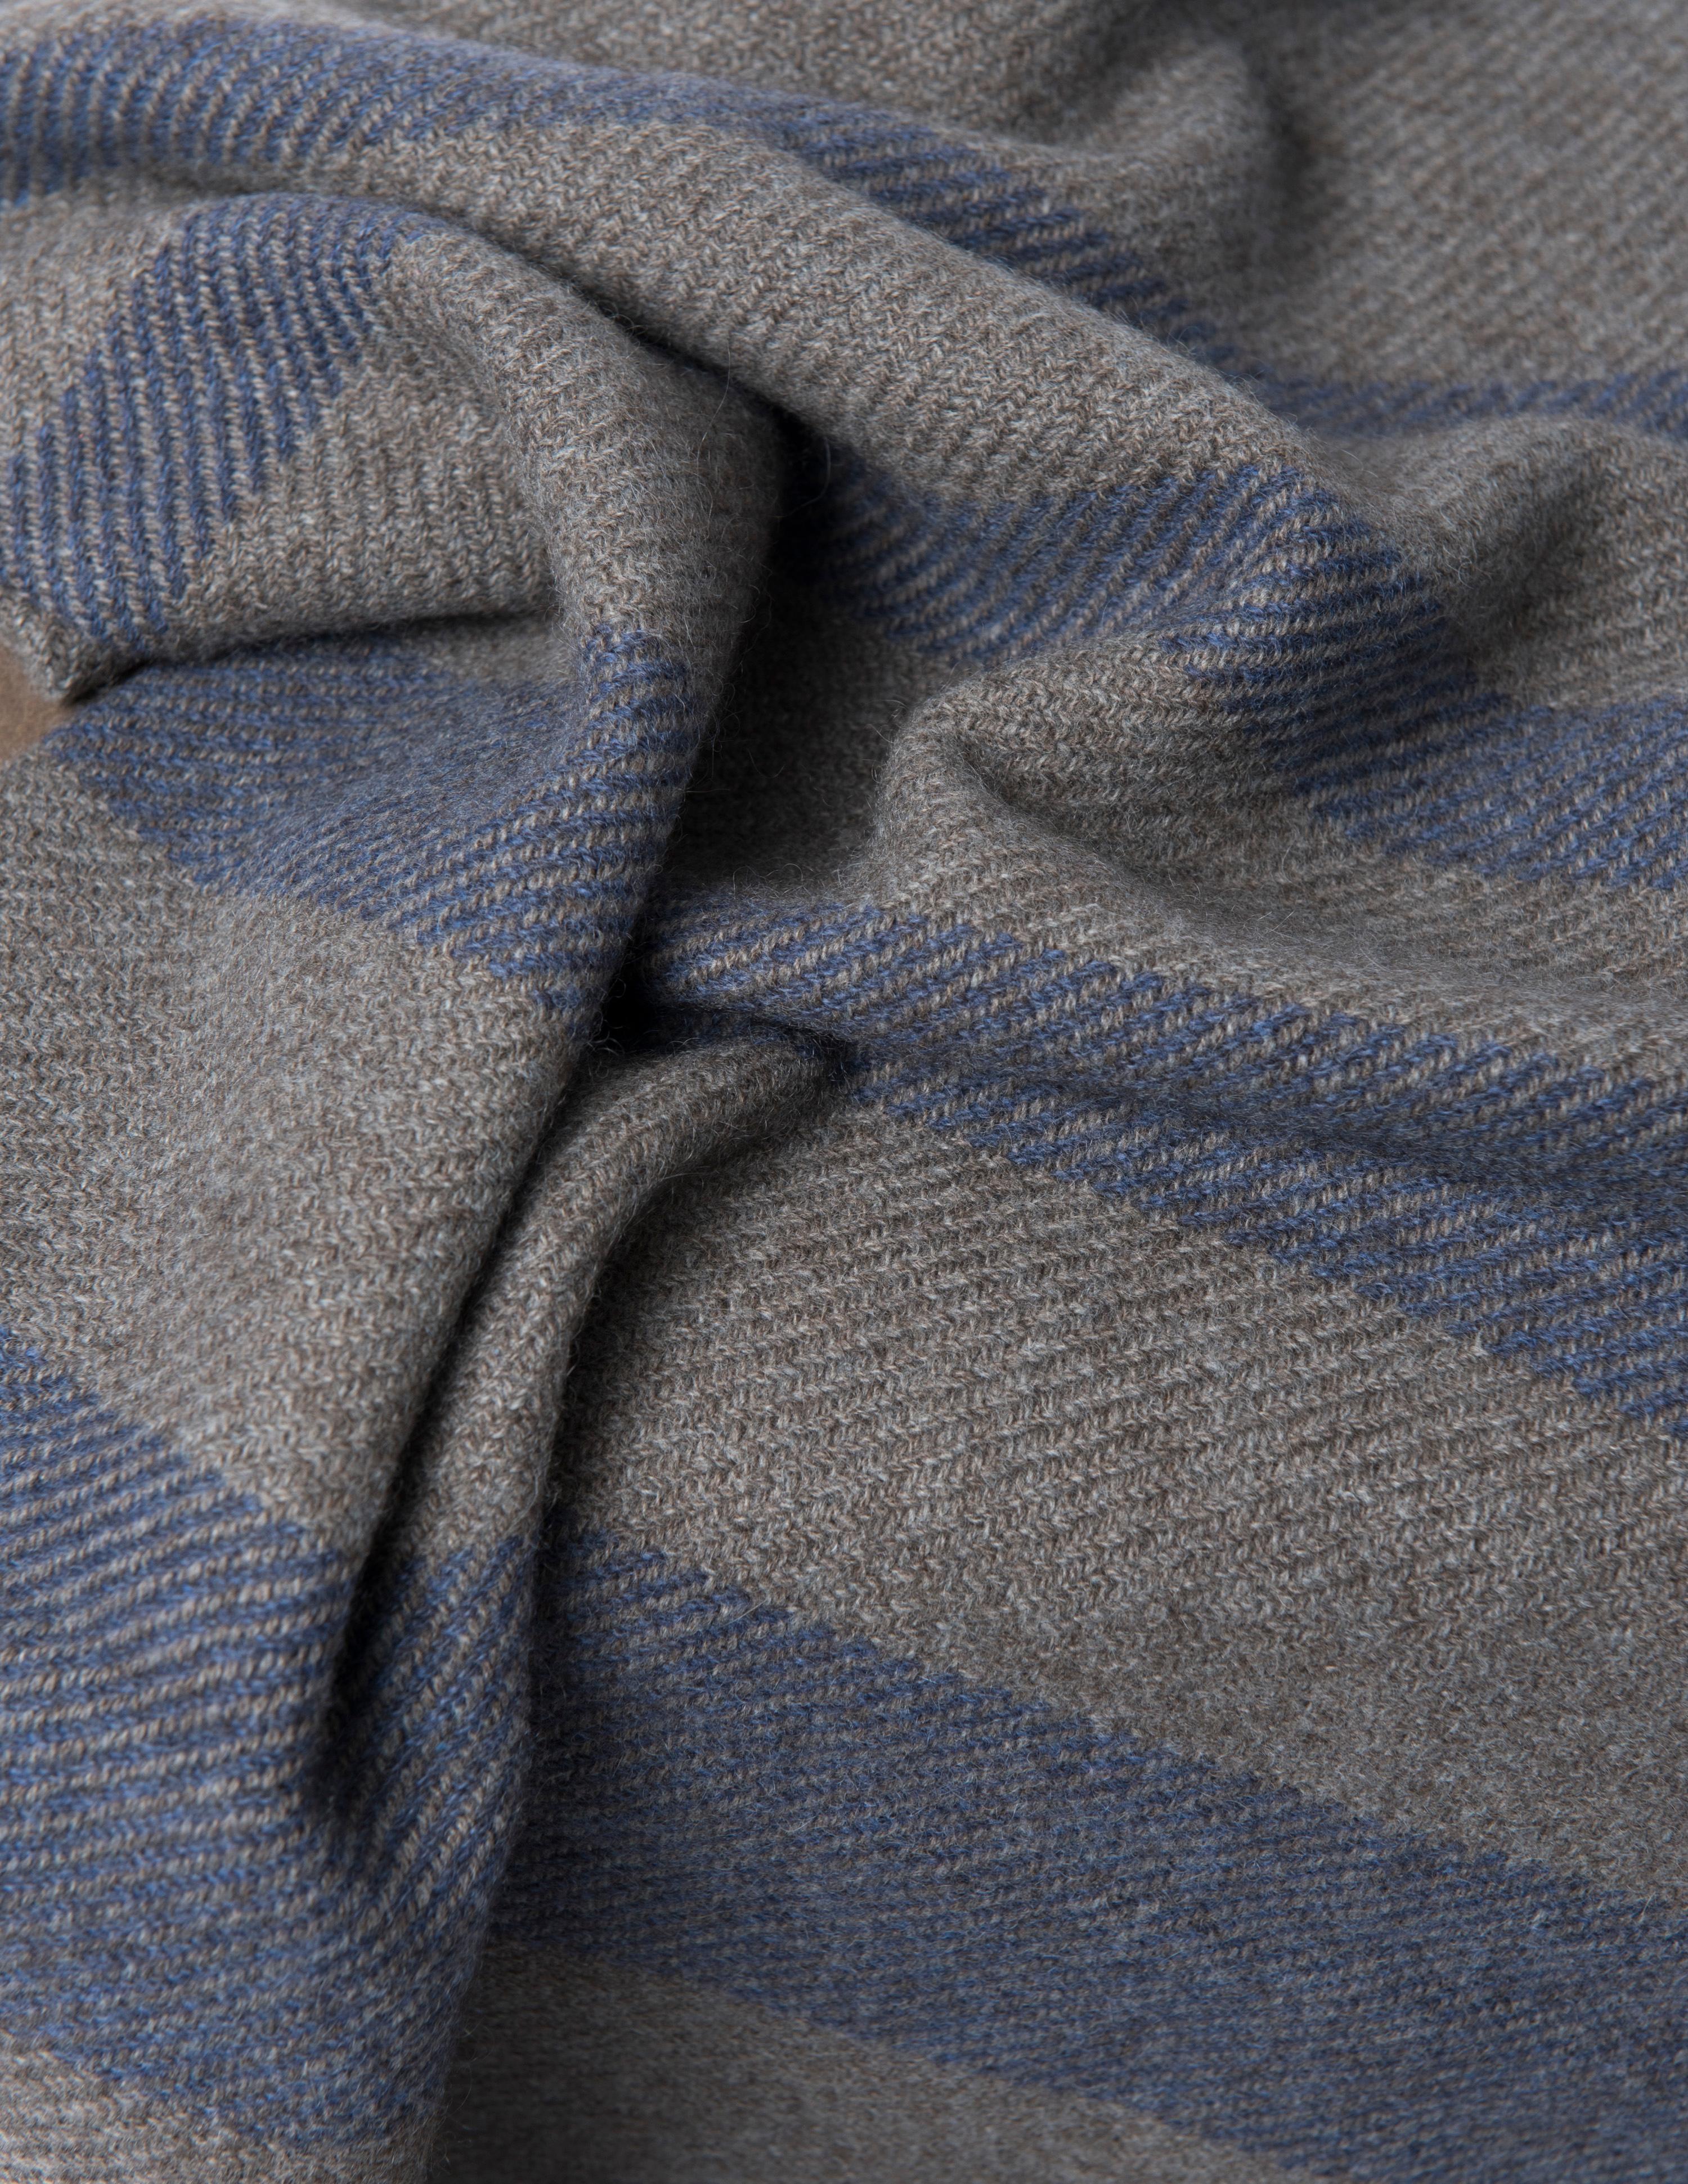 Mjiila est fière de présenter sa nouvelle gamme de textiles d'intérieur de luxe en 100% pure laine de yak. Cette fibre rare, douce, chaude et résistante - appelée Khullu - constitue une sous-couche naturelle qui protège les animaux du froid de